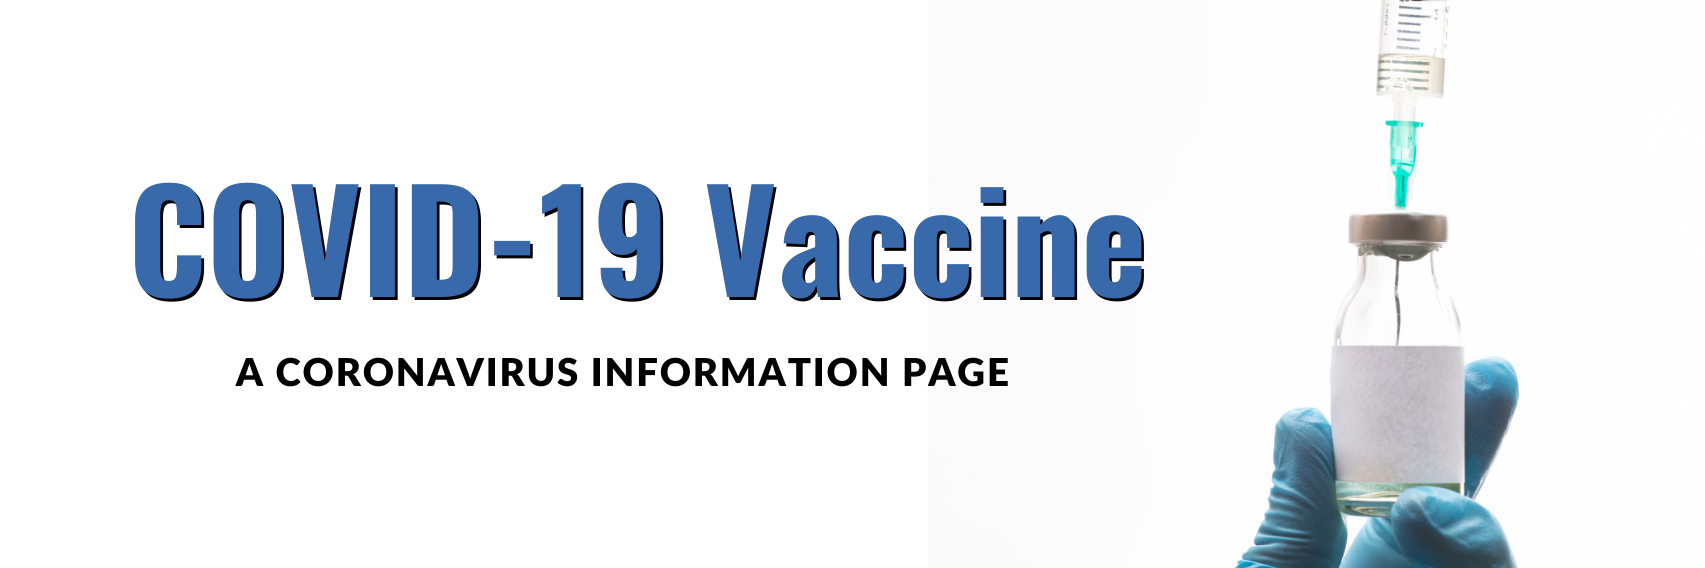 Covid 19 Vaccine Banner